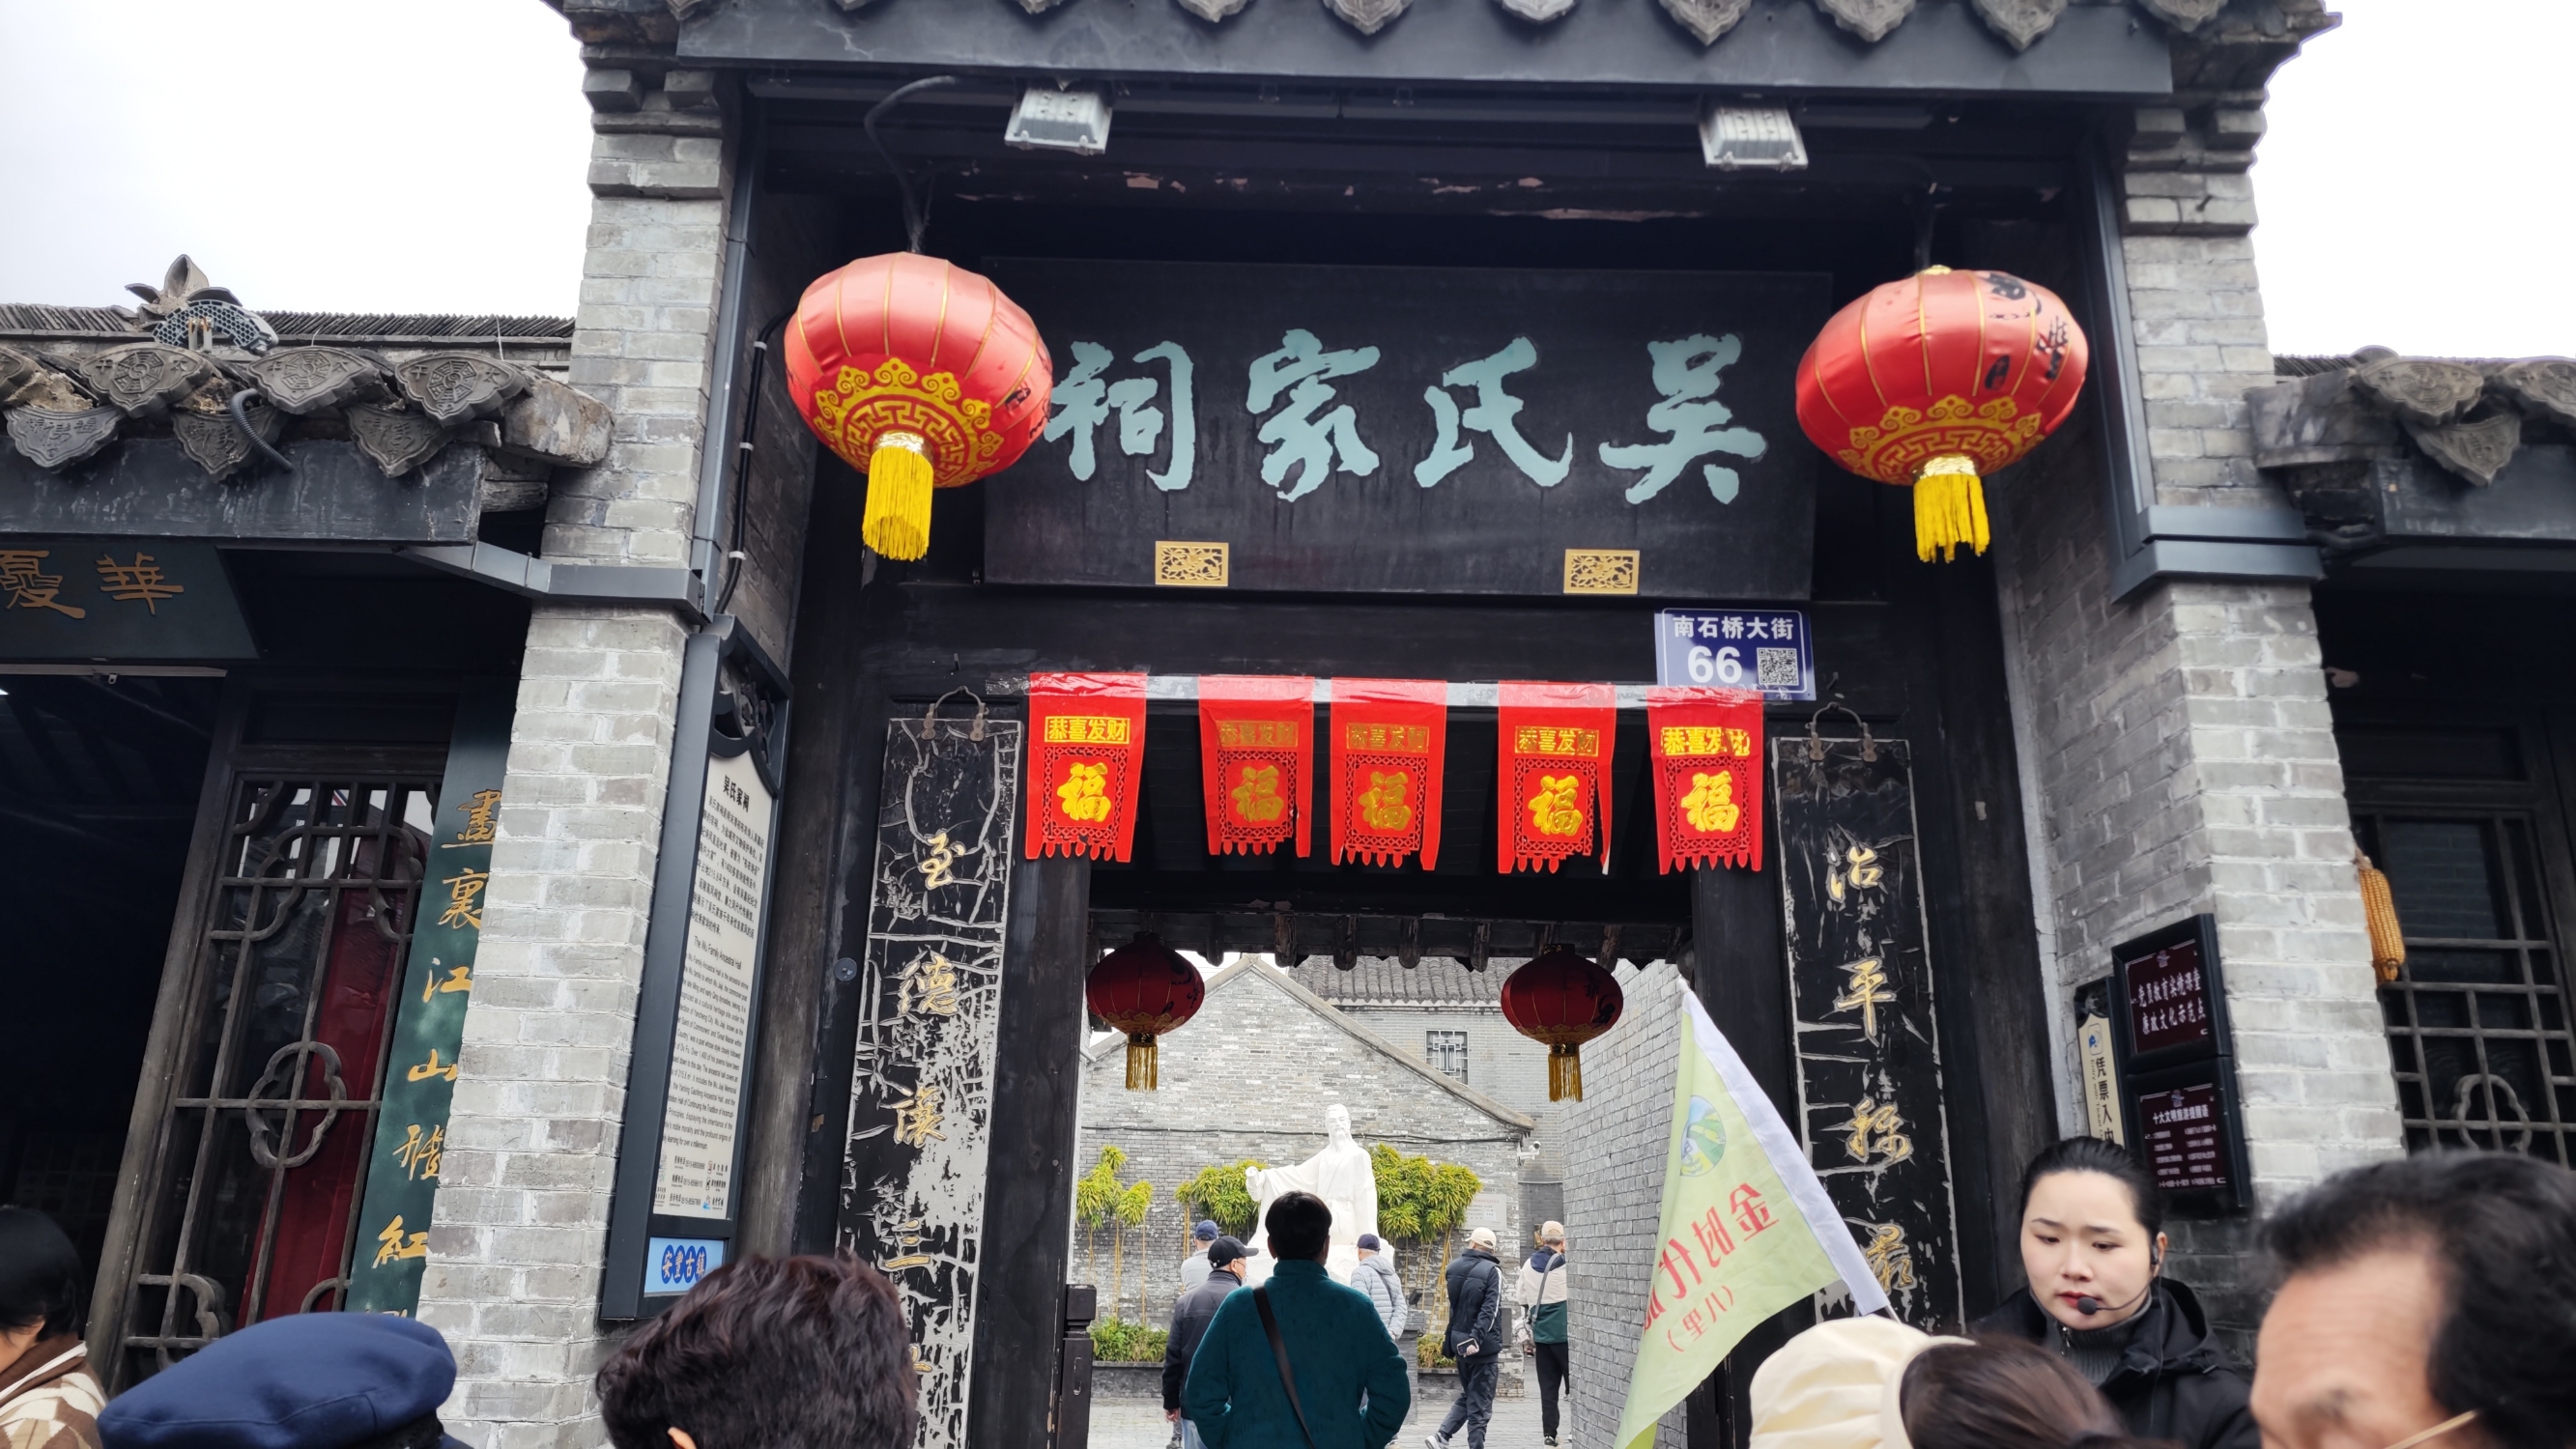 安丰古镇的吴氏家祠位于古南街，是明末清初著名布衣诗人吴嘉纪的家族祠堂。这座家祠占地面积215.8平方